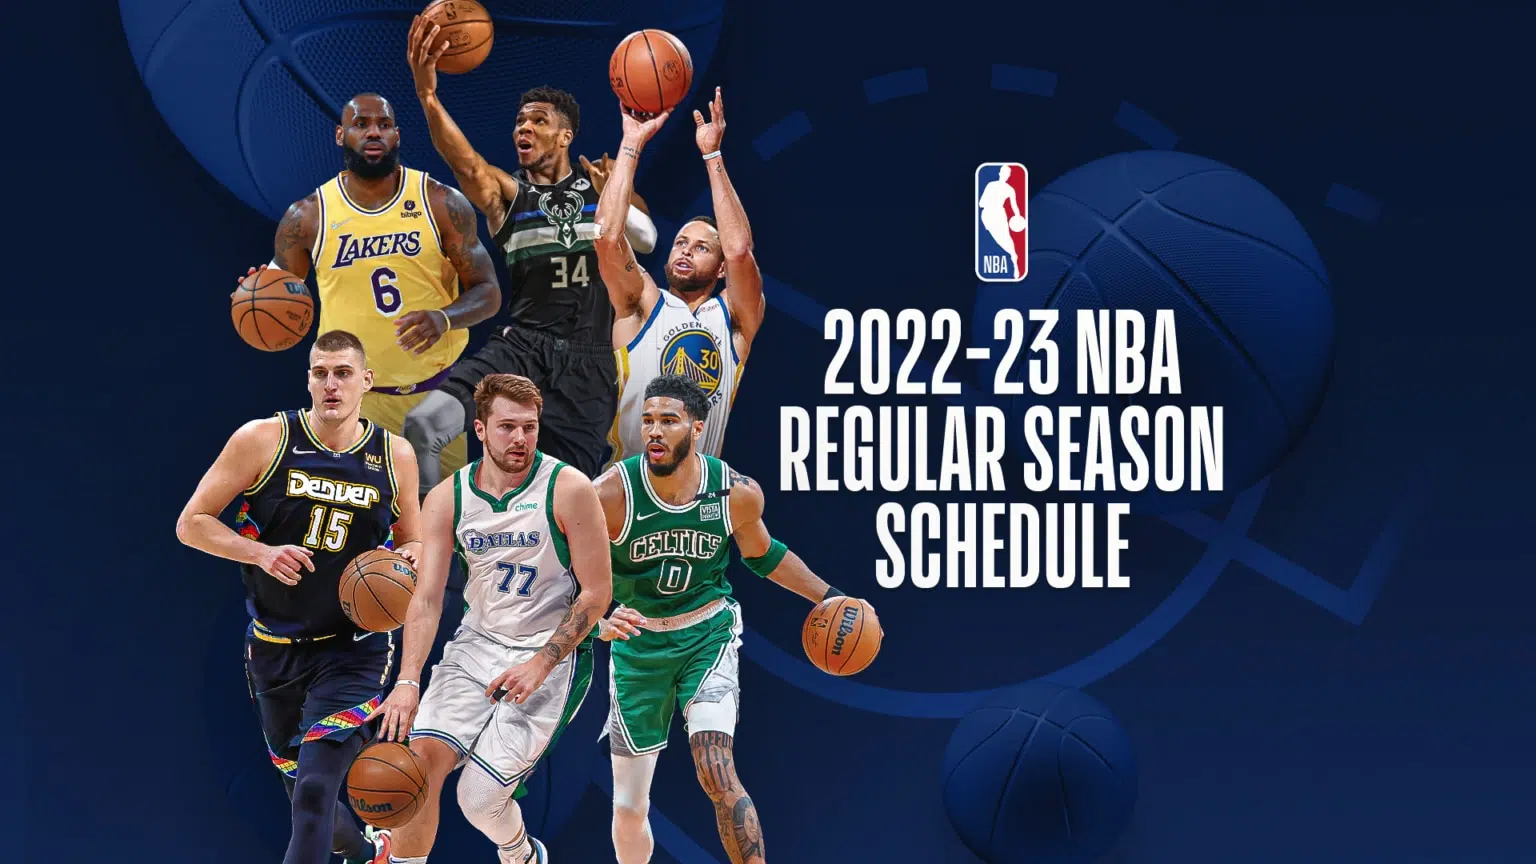 Agenda de transmissões da NBA na TV desta semana